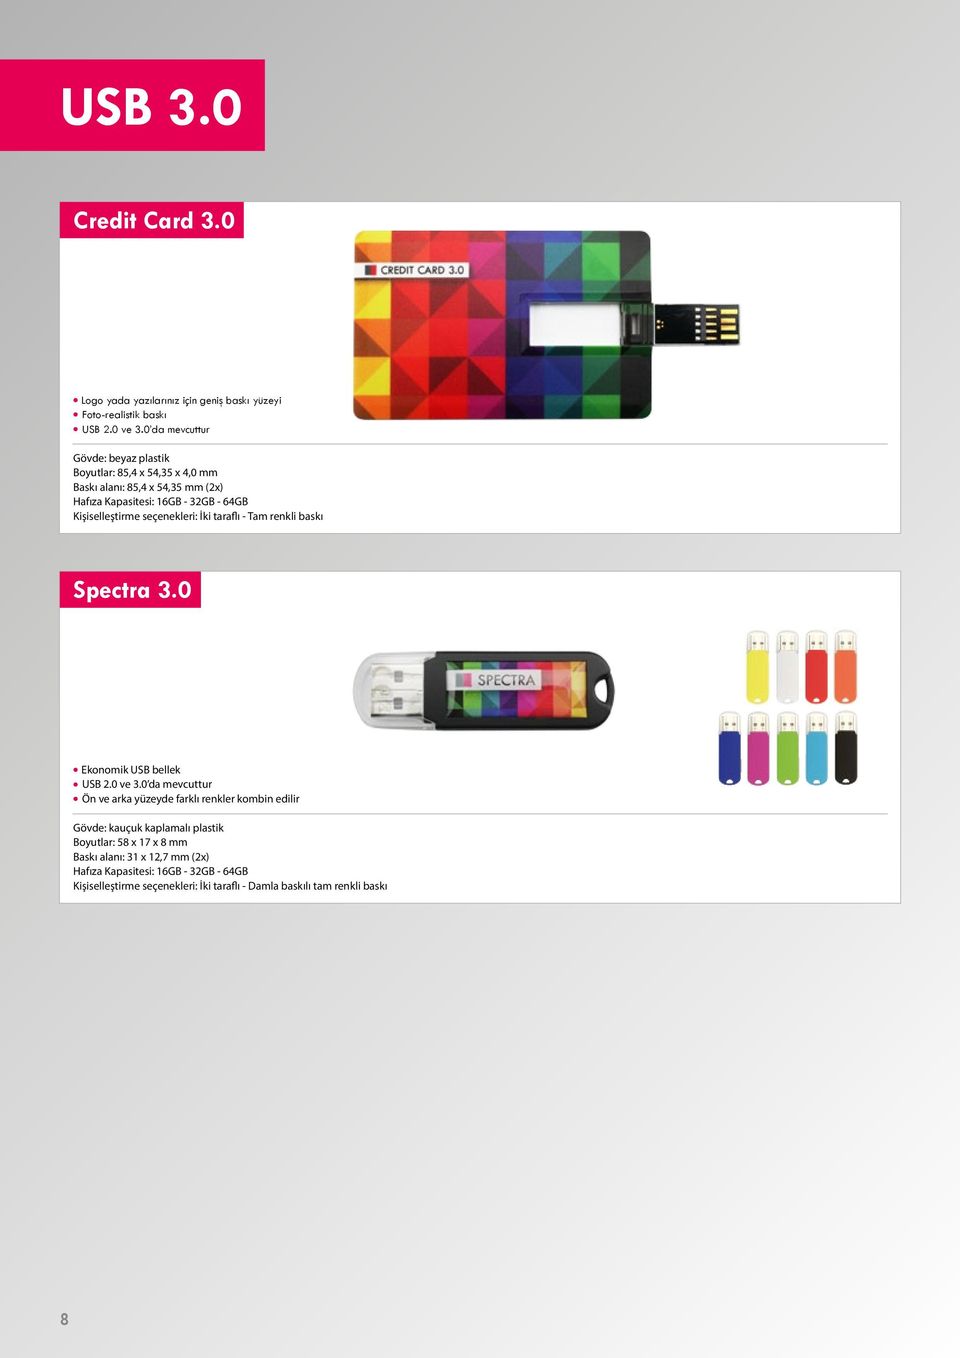 Kişiselleştirme seçenekleri: İki taraflı - Tam renkli baskı Spectra 3.0 Ekonomik USB bellek USB 2.0 ve 3.